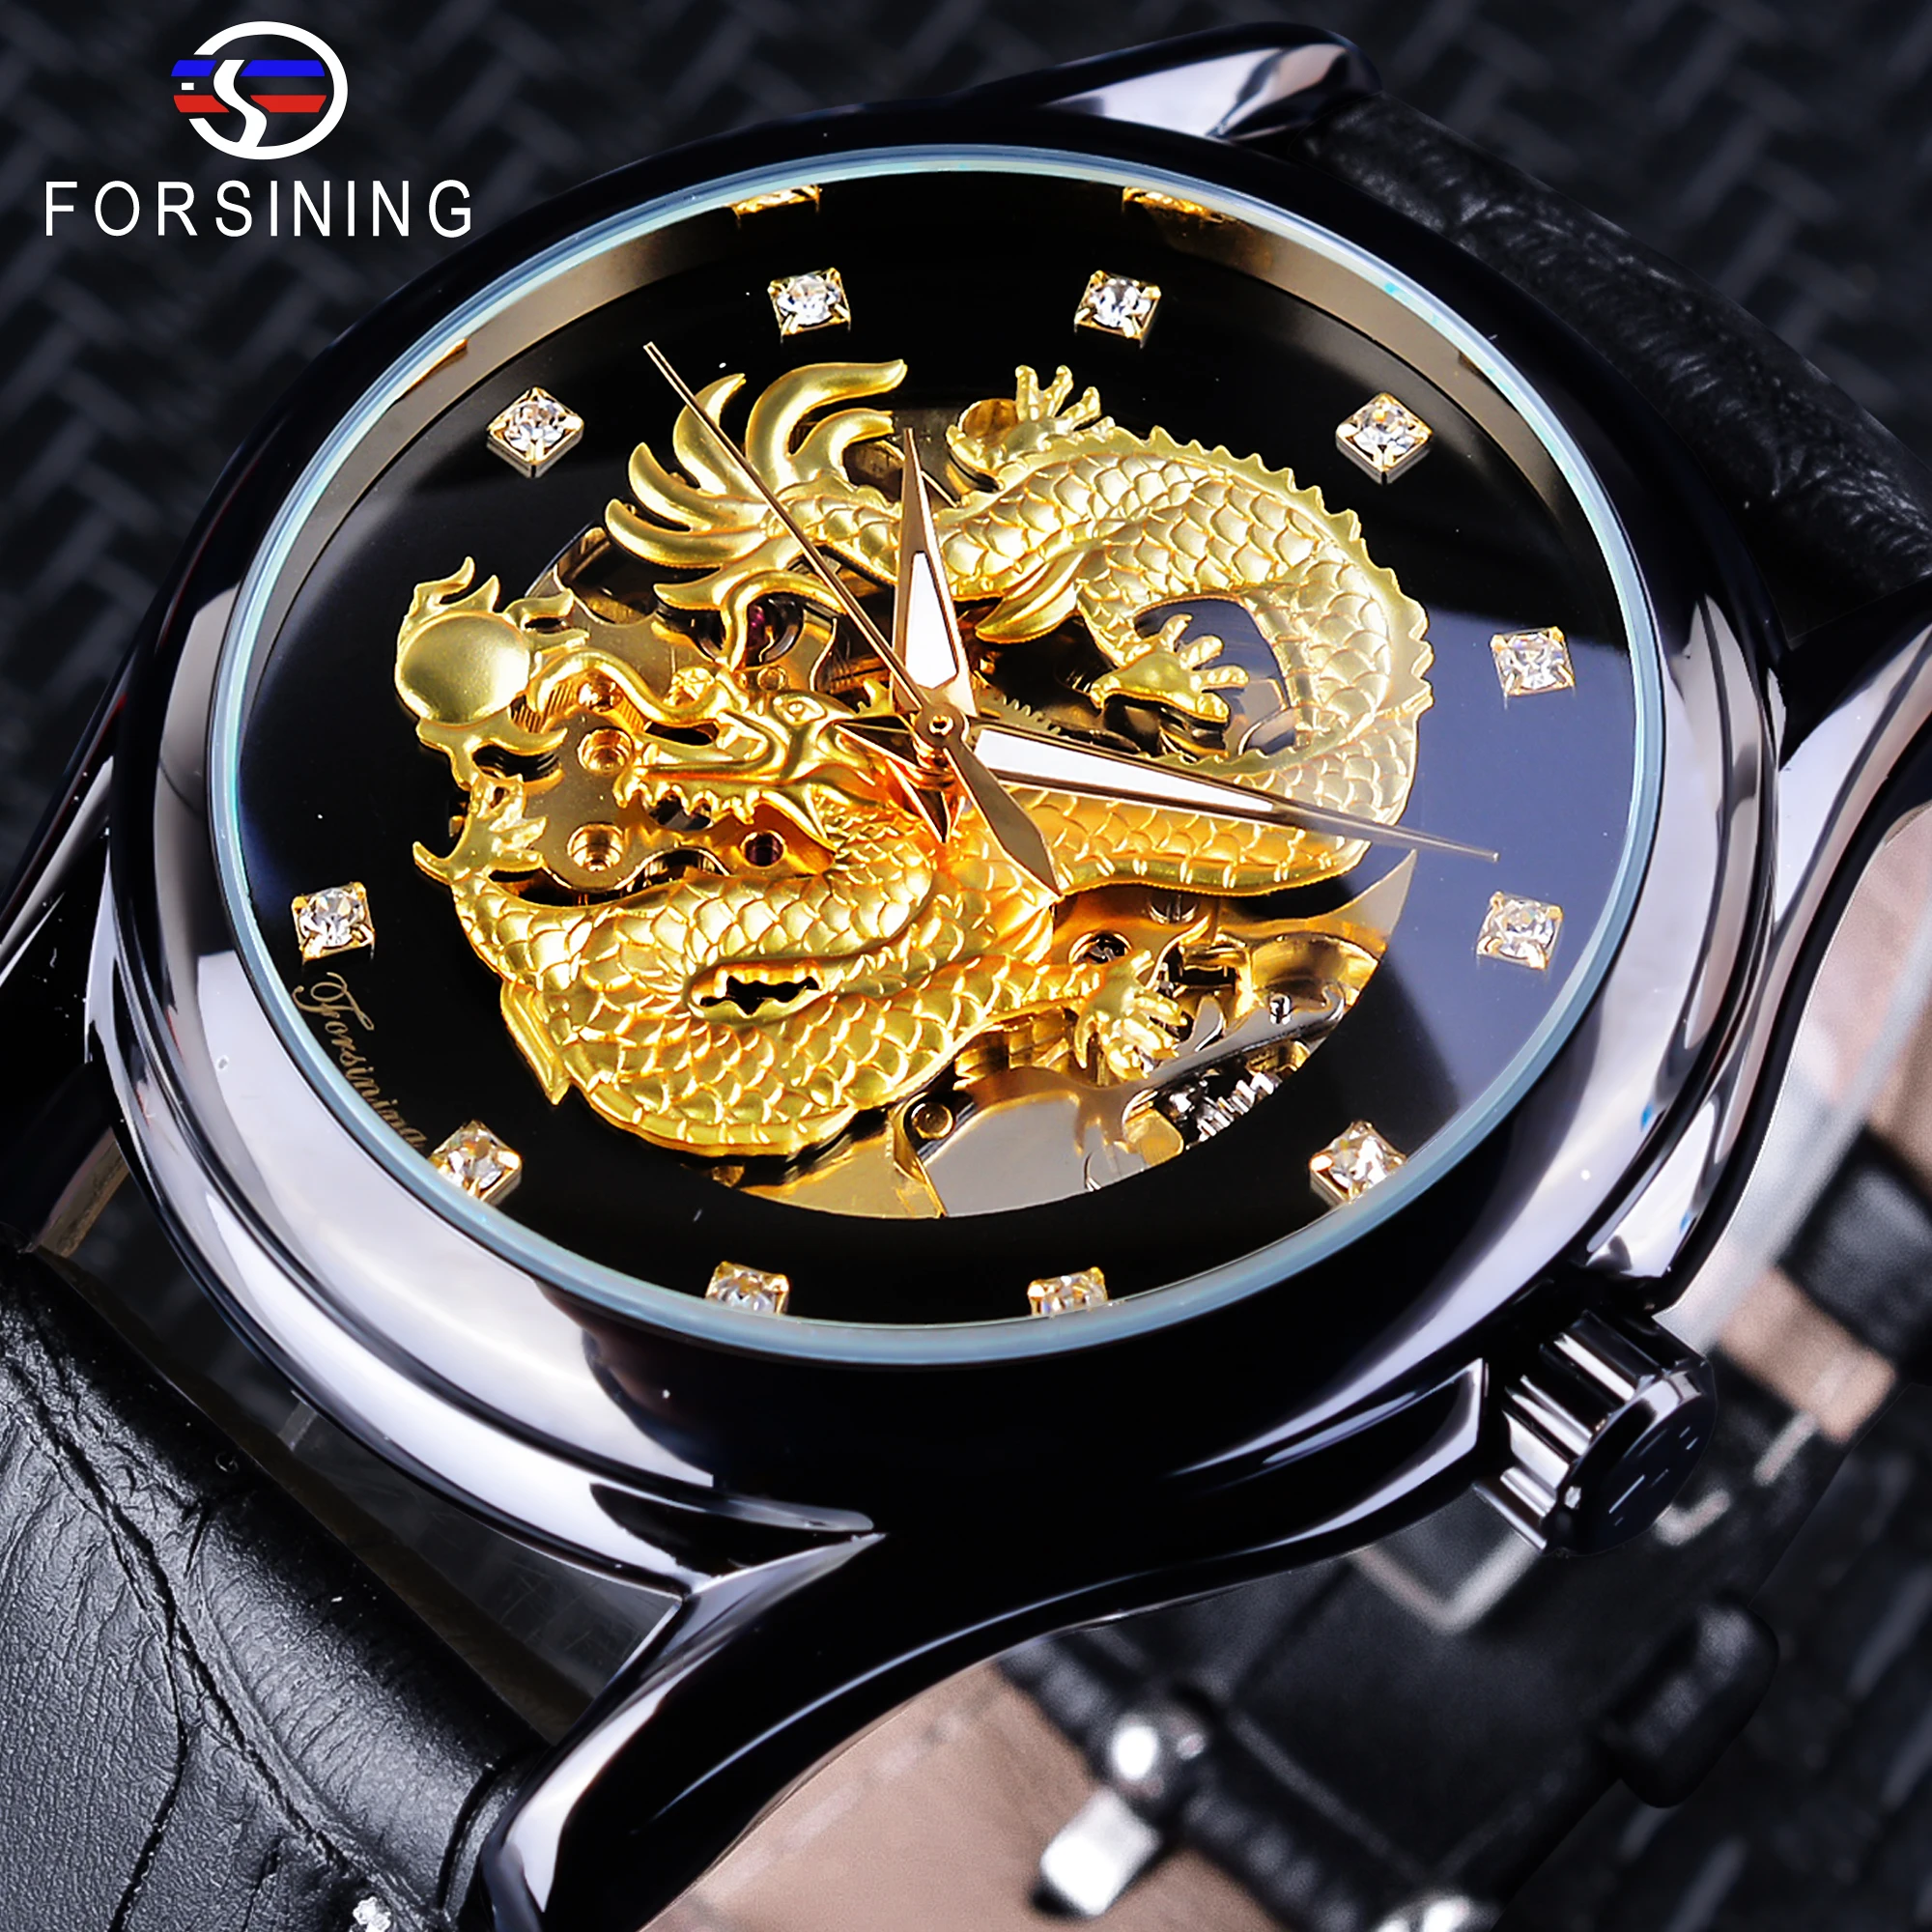 Forsining китайский дракон дизайн Алмазный циферблат черный золотой мужские часы светящиеся стрелки лучший бренд класса люкс водонепроницаемые механические часы